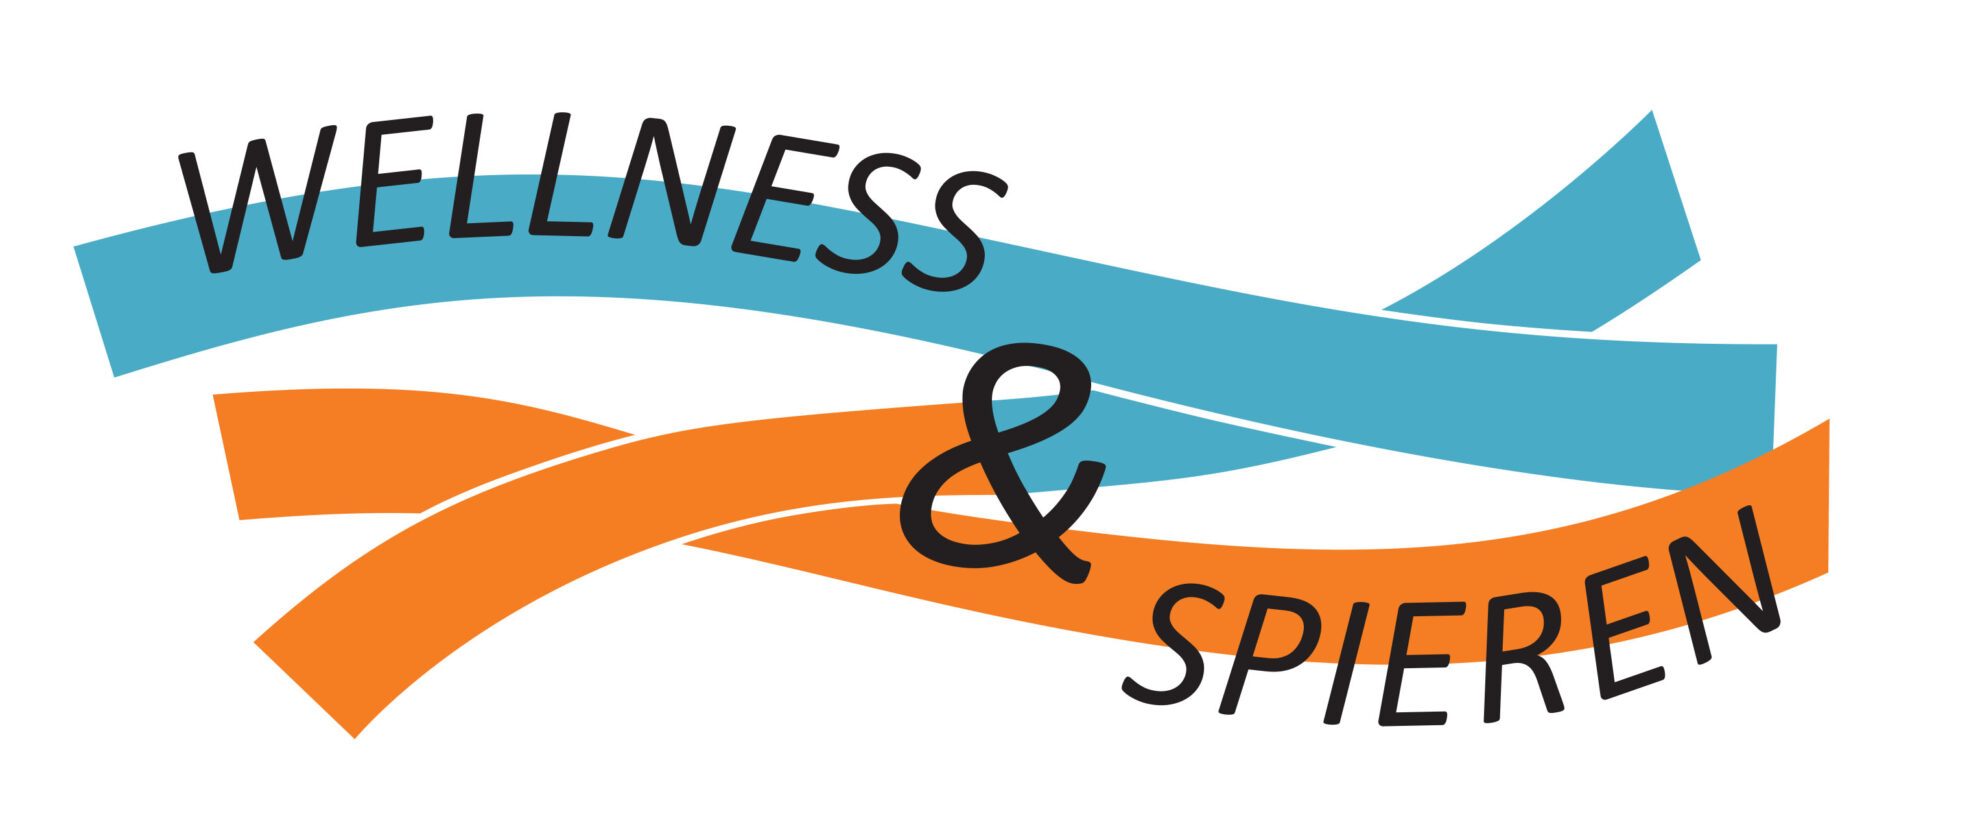 Wellness & Spieren logo